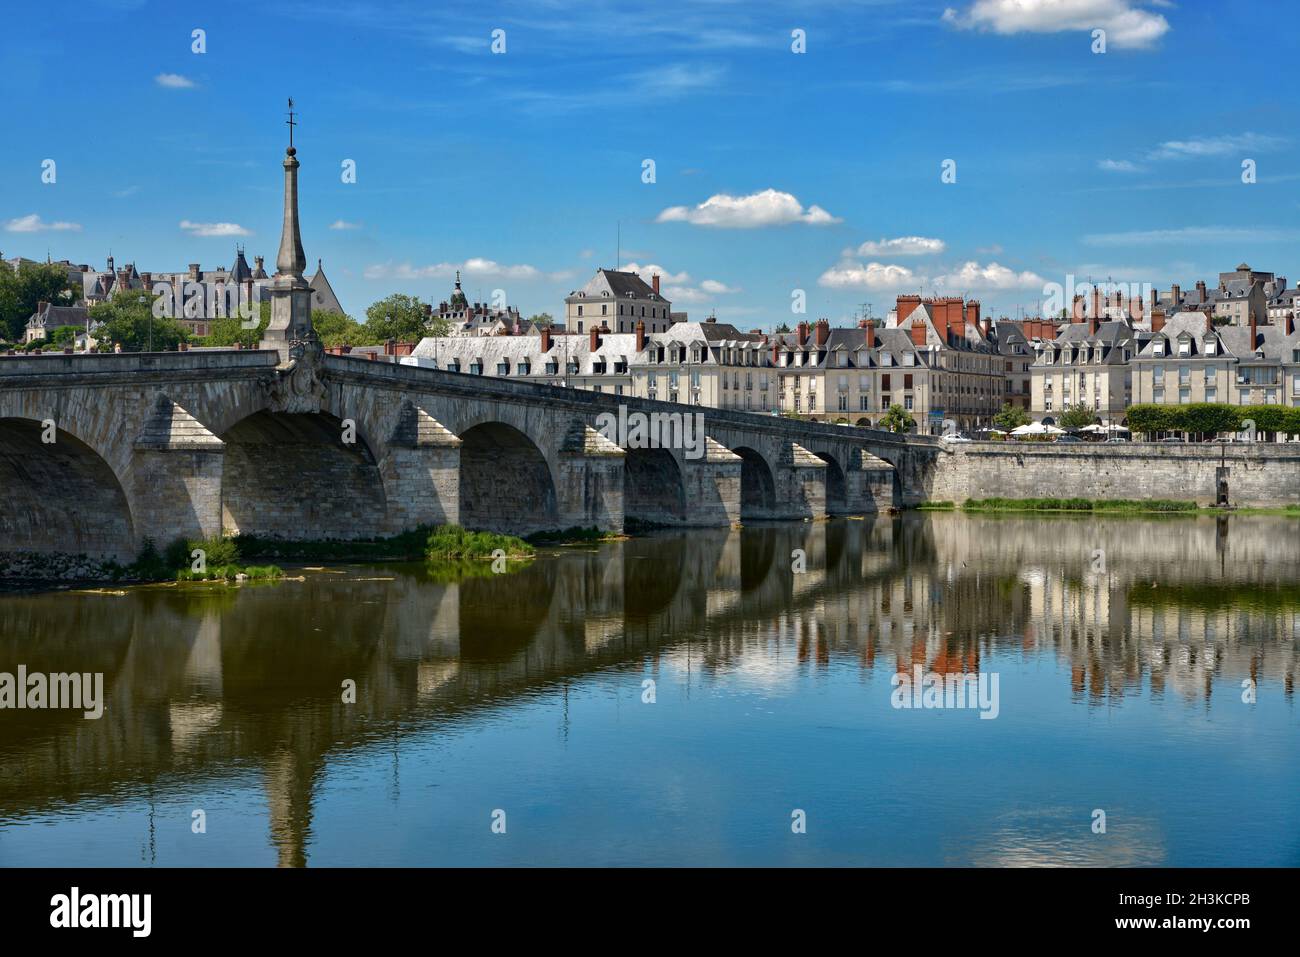 Bridge Jacques-Gabriel over the Loire river at Blois, a commune and the capital city of Loir-et-Cher department in Centre-Val de Loire, France Stock Photo